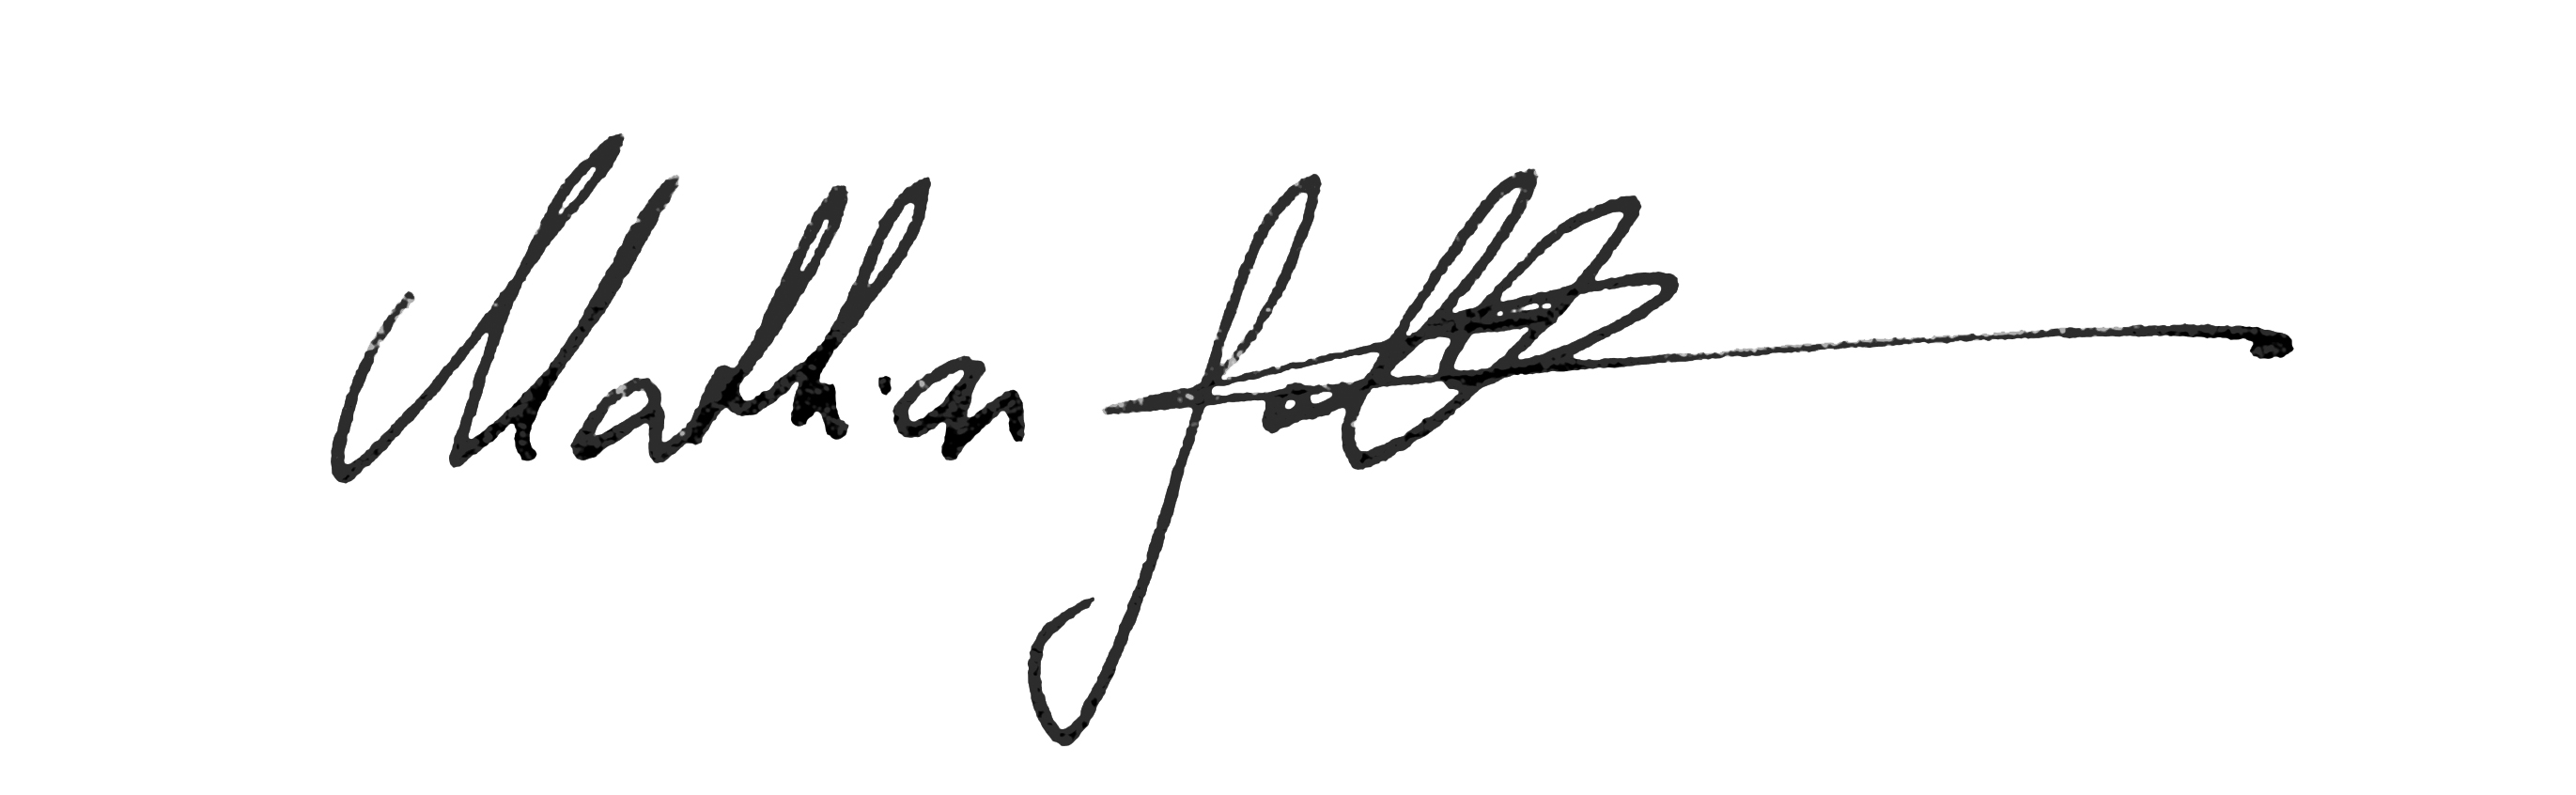 Signature Gollwitzer